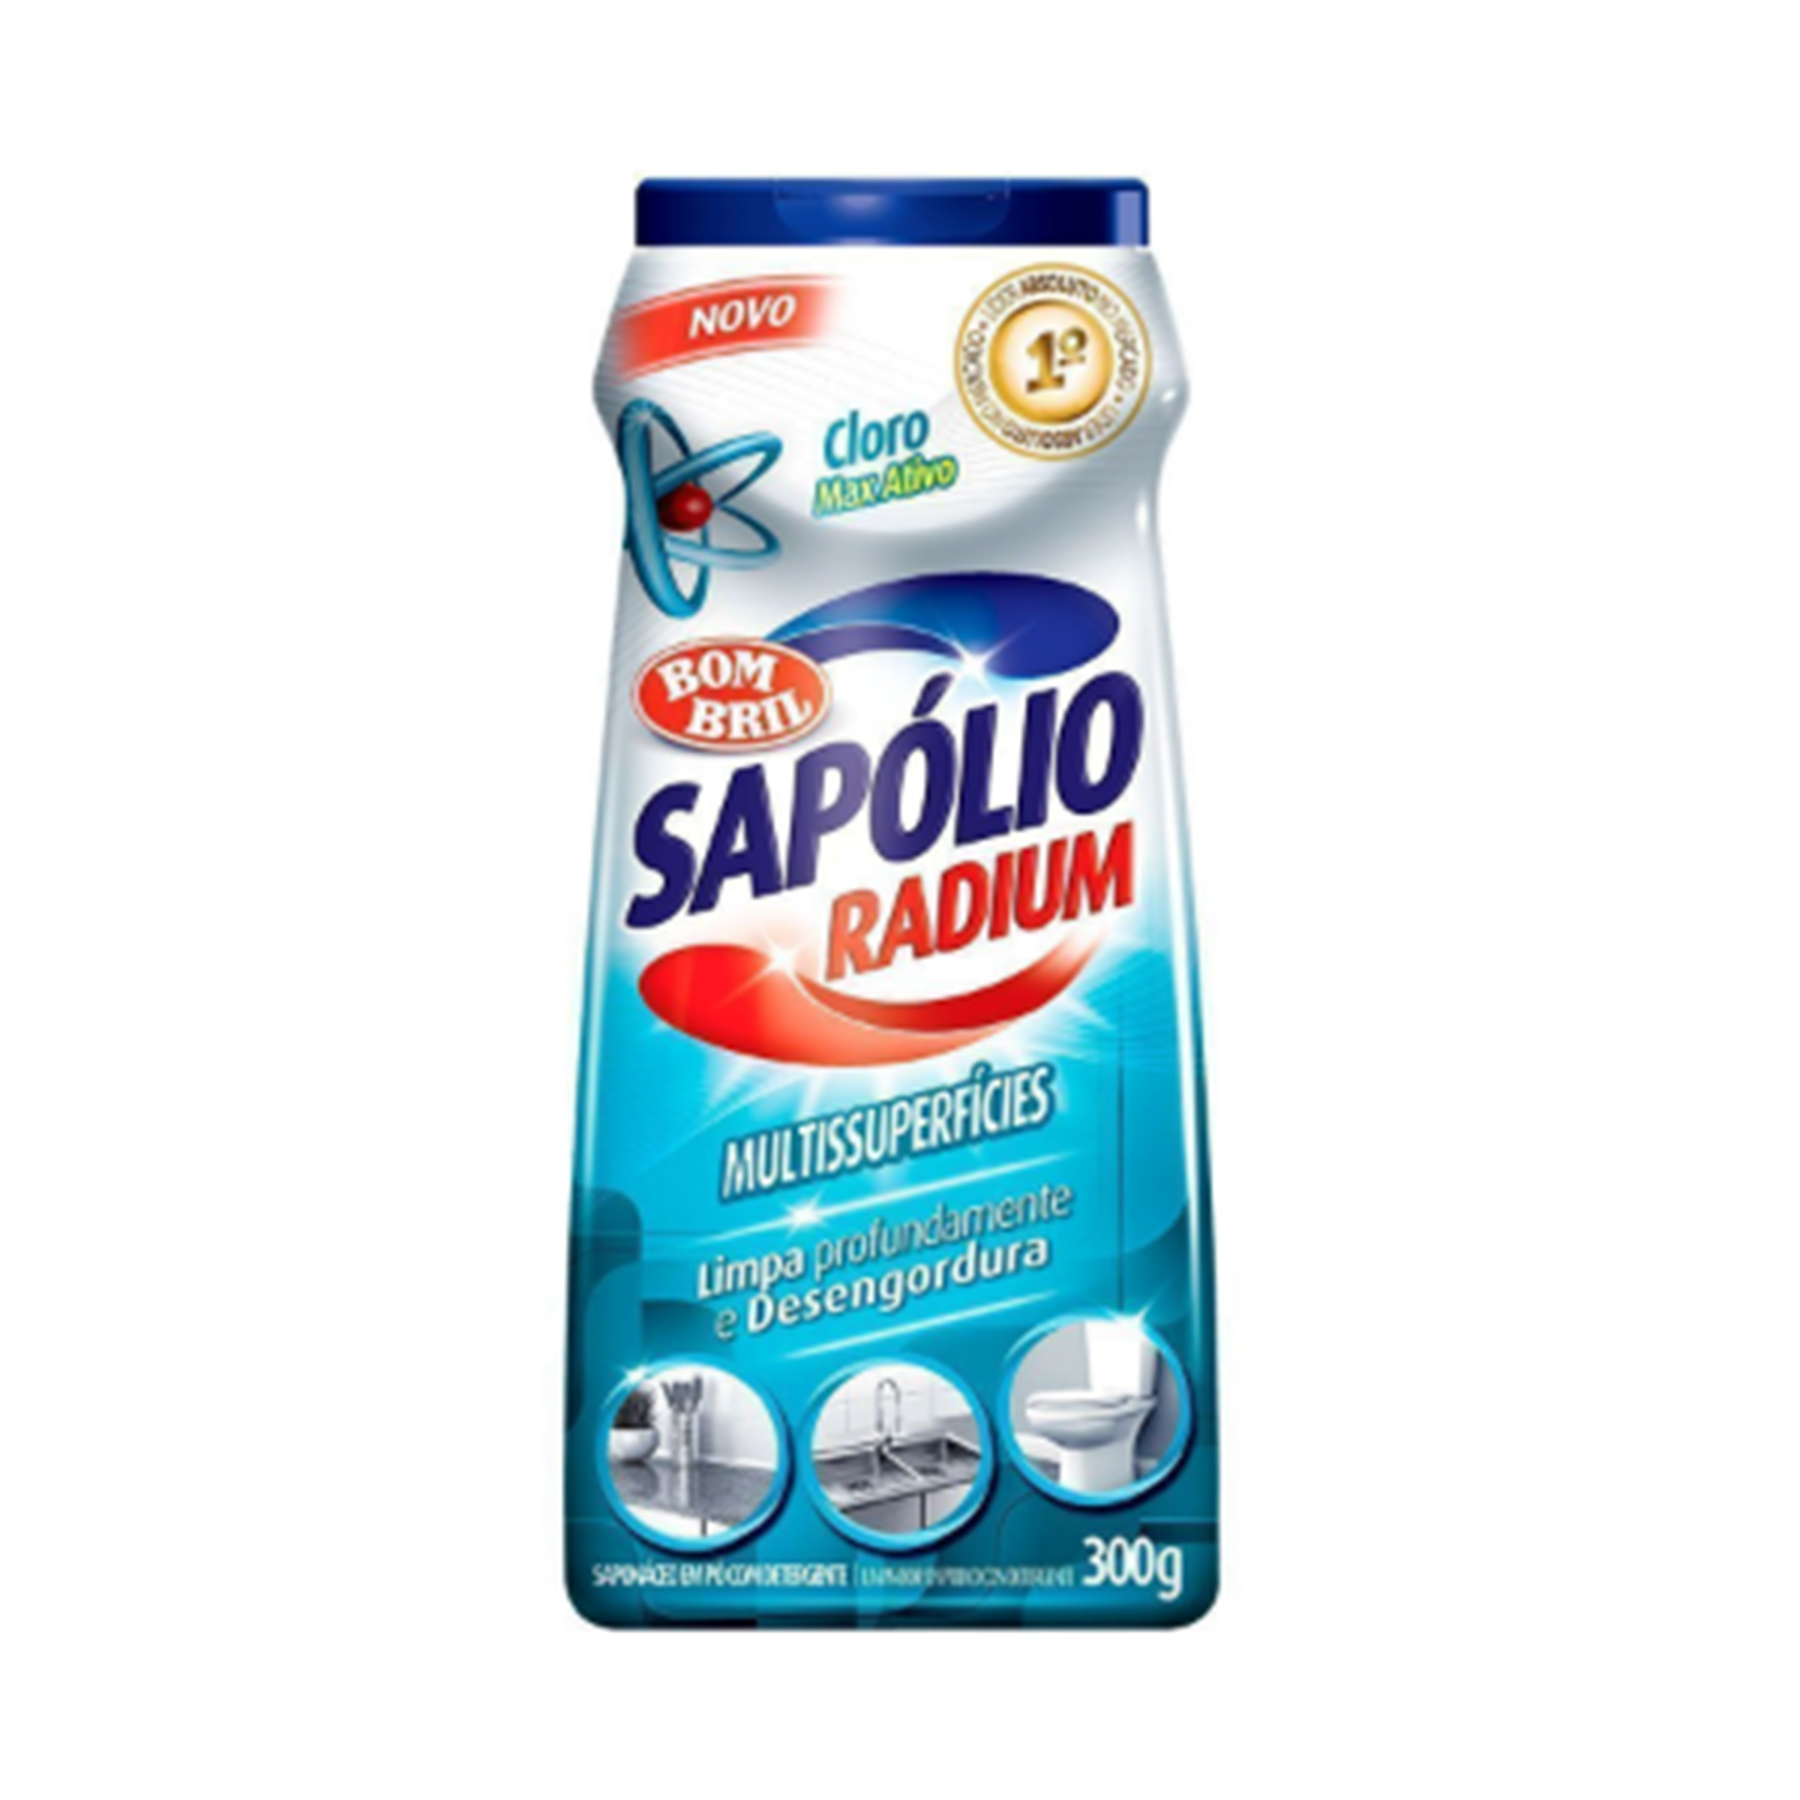 Sapolio Po Radium 300g, Cloro